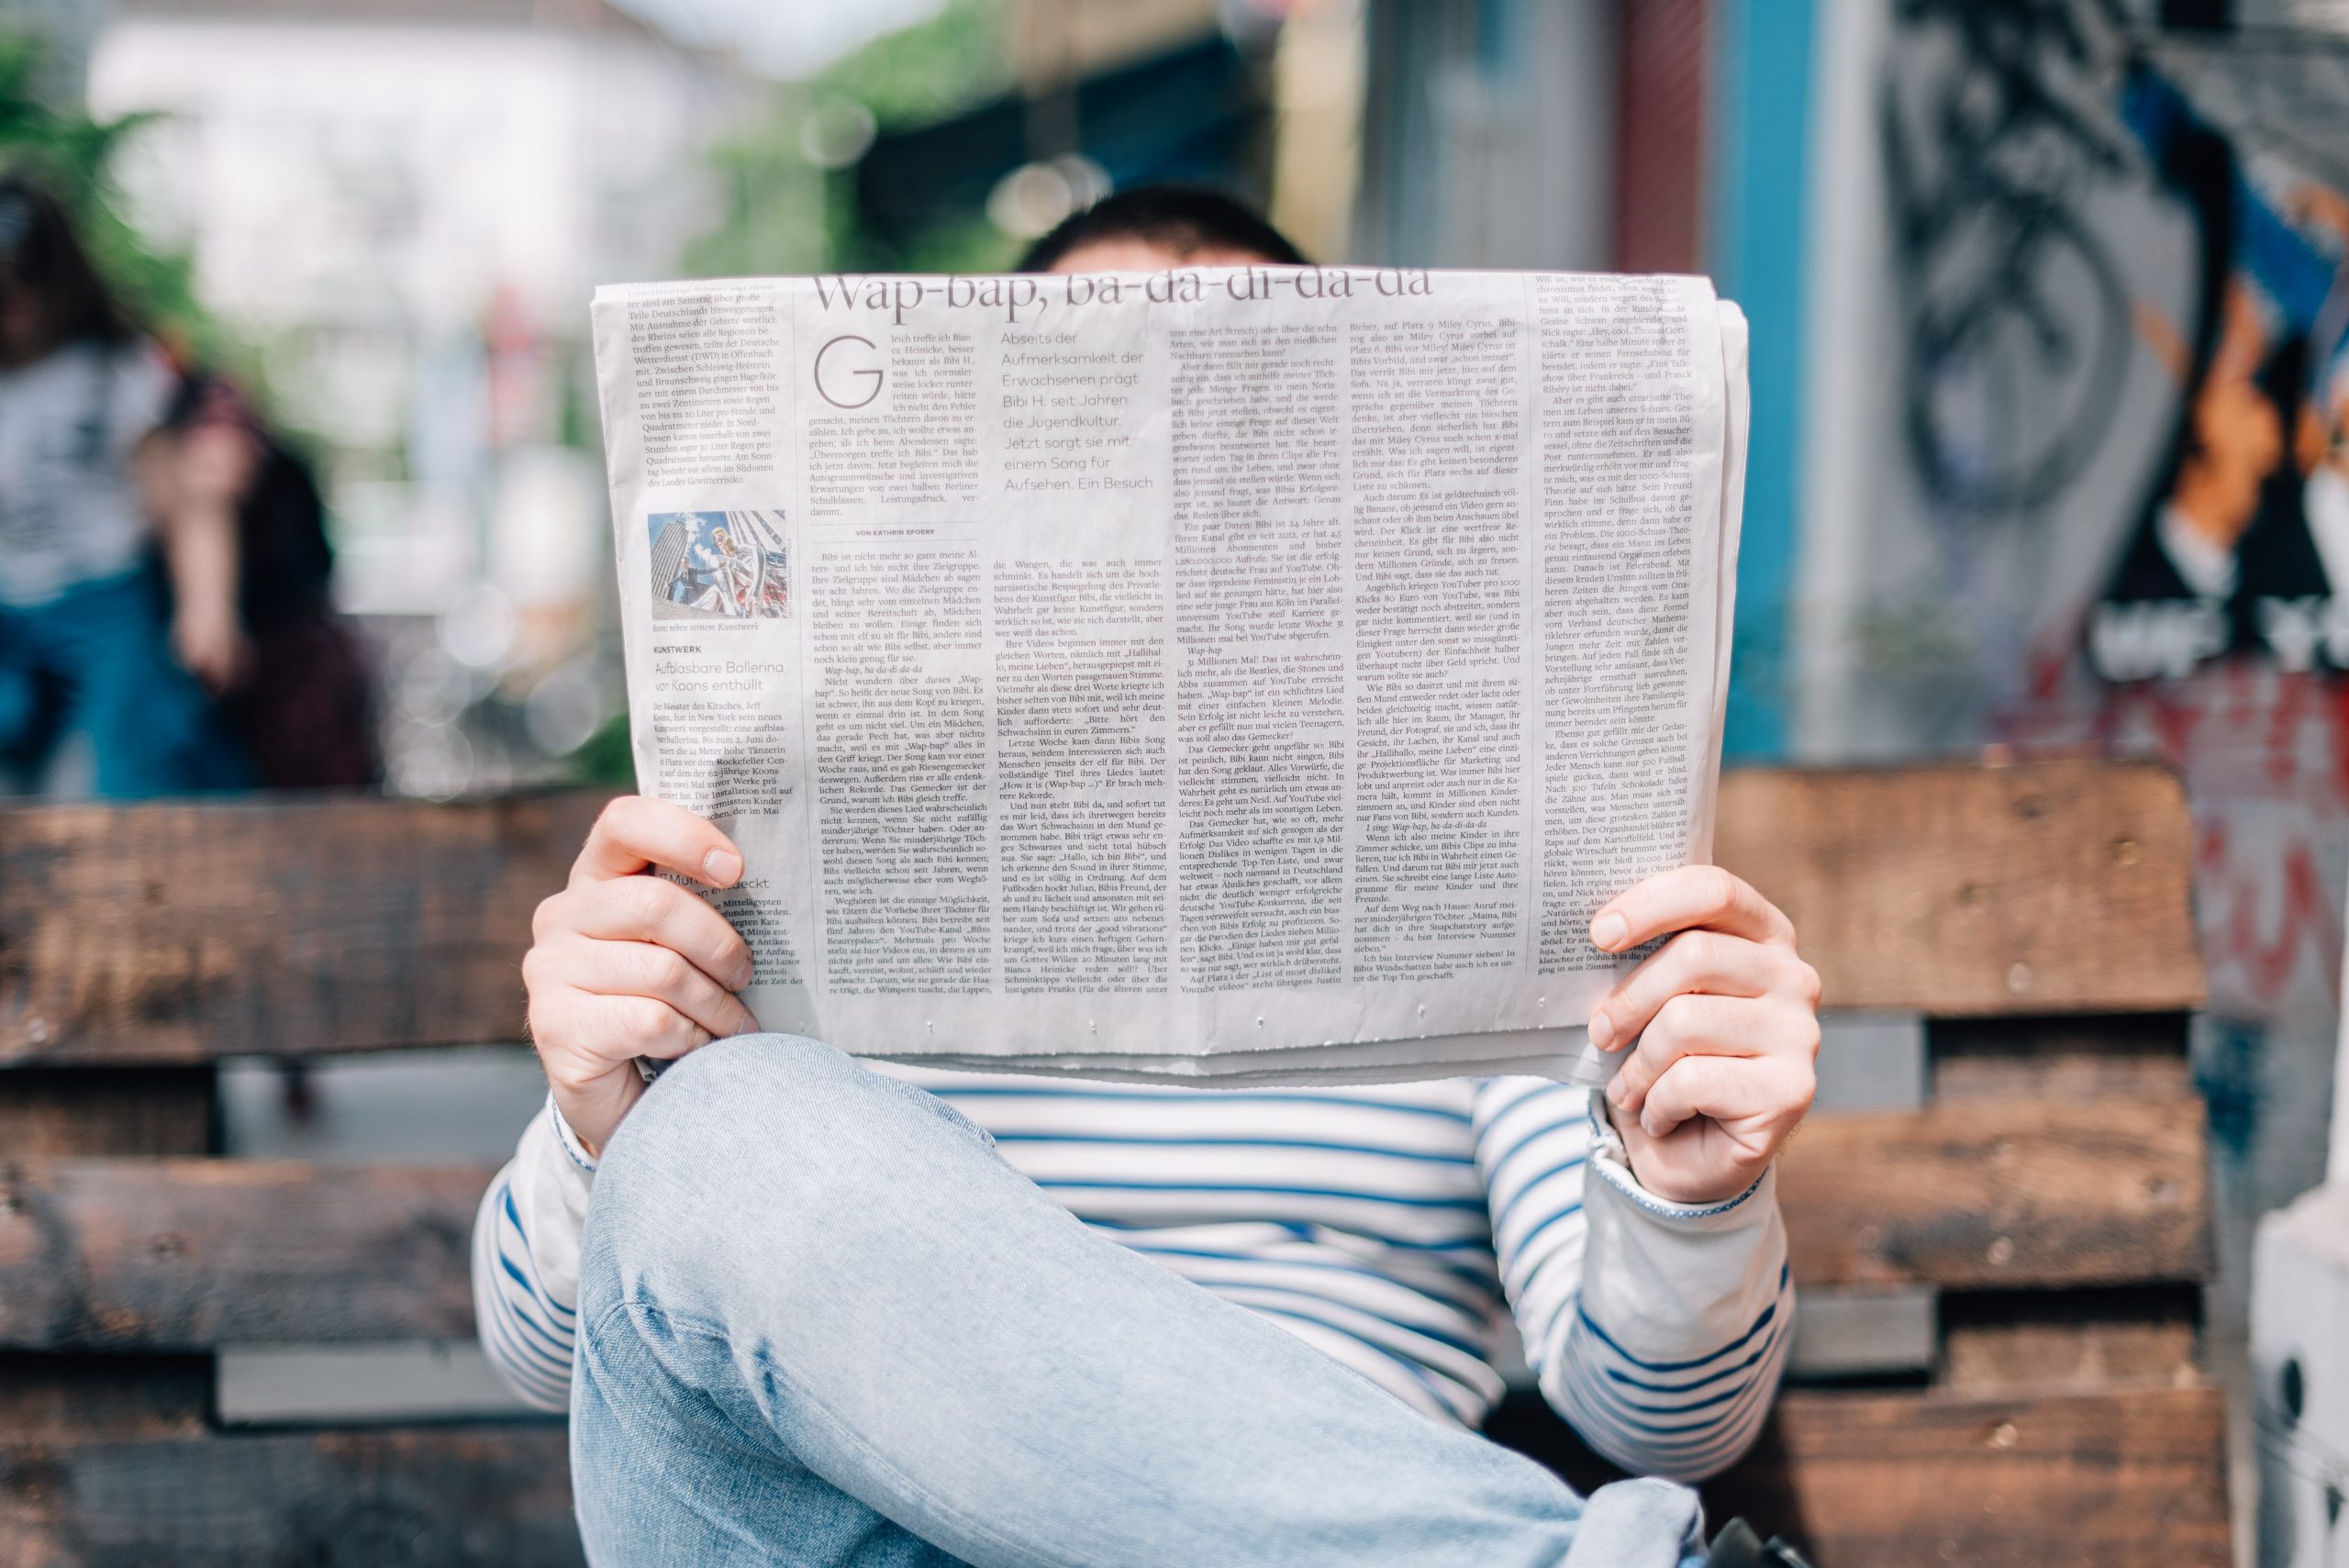 Fotografia di un uomo seduto che legge il giornale